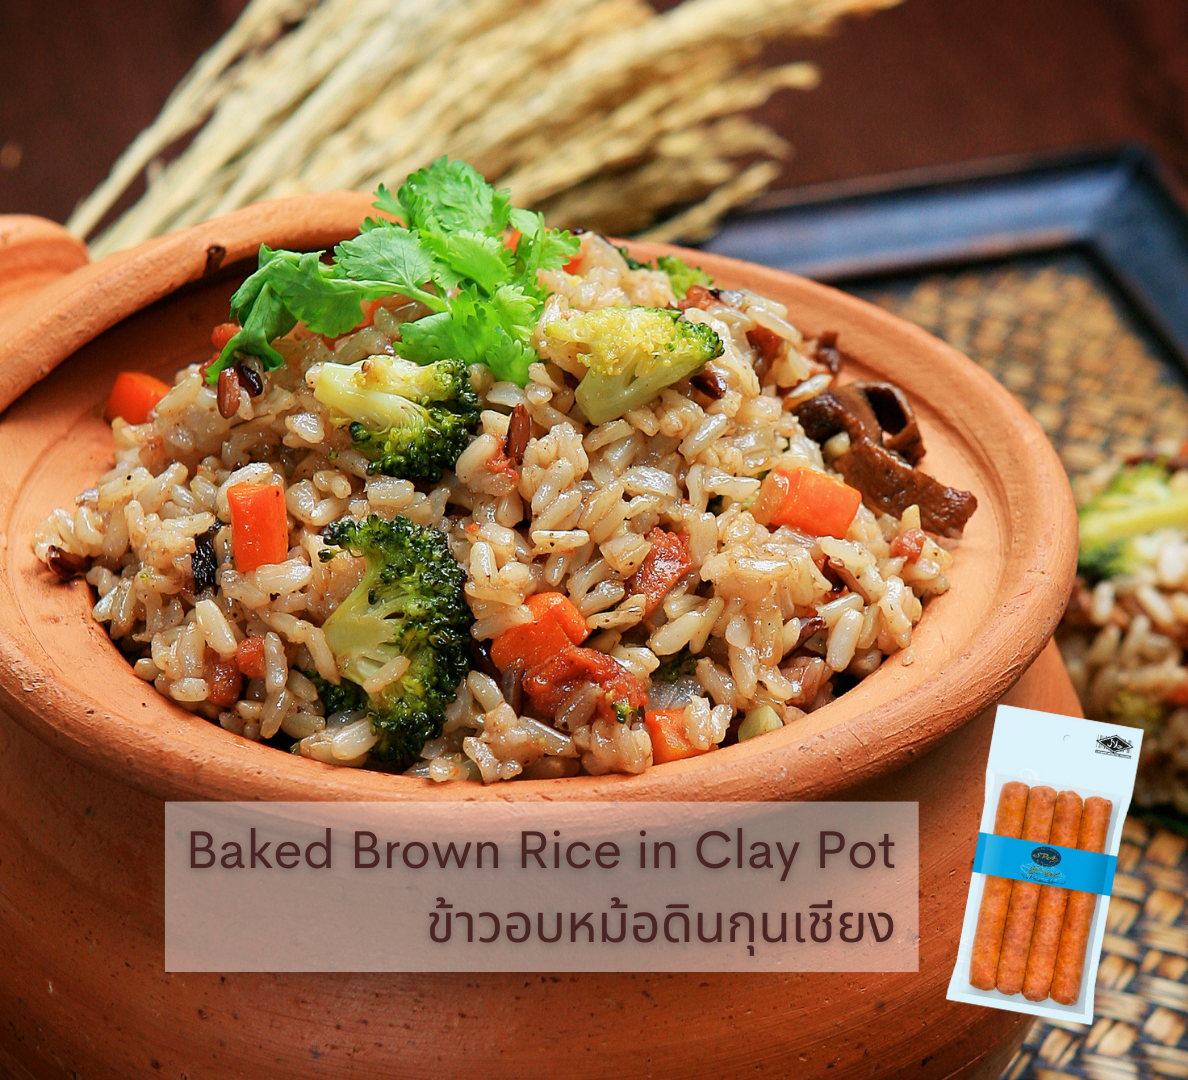 เมนูอาหารเจ-มังสวิรัติ spa foods vegan baked brown rice in clay pot ข้าวอบหม้อดินกุนเชียง